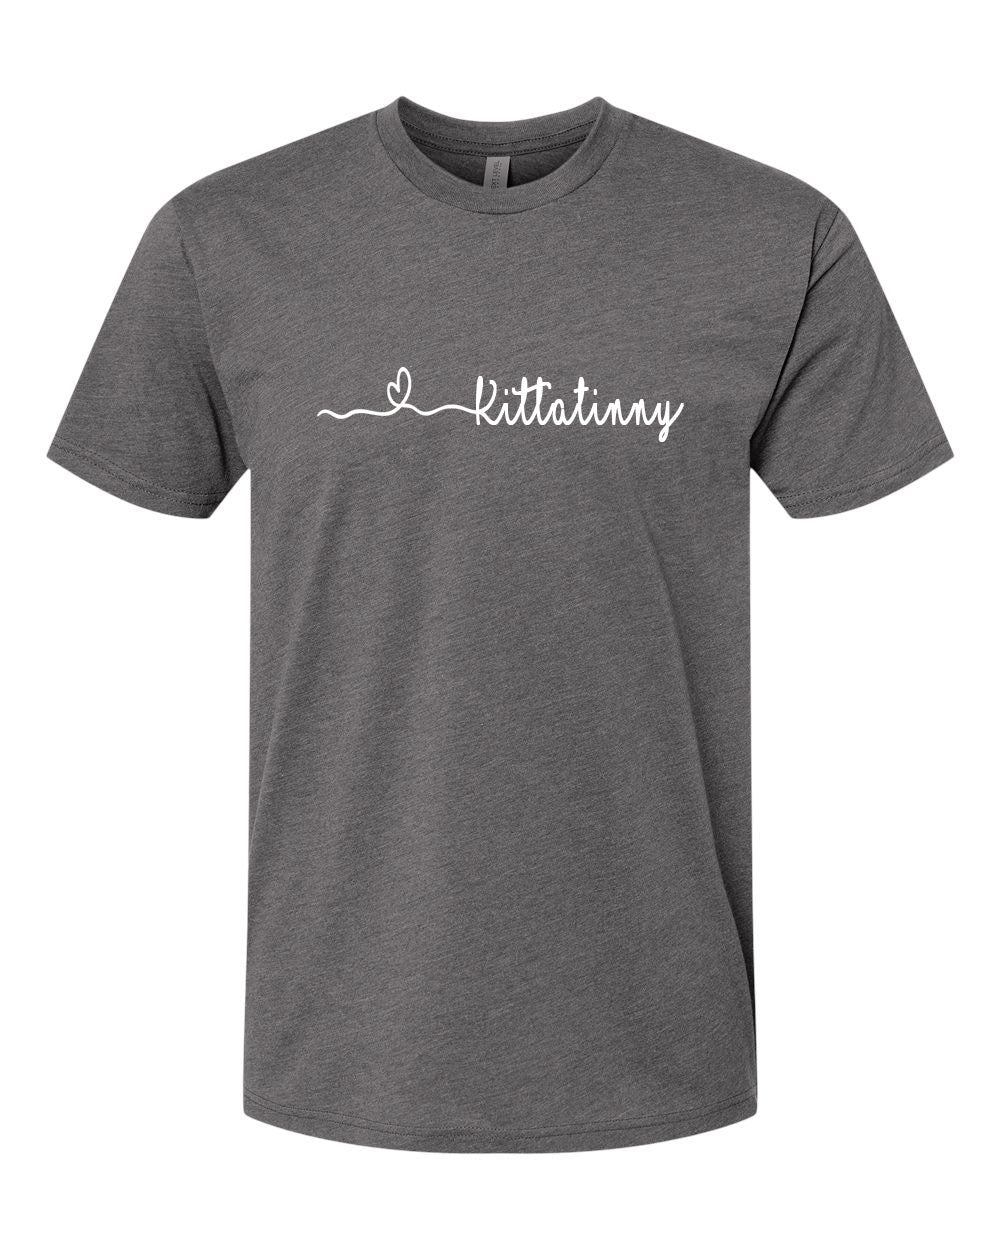 Stillwater design 9 T-Shirt